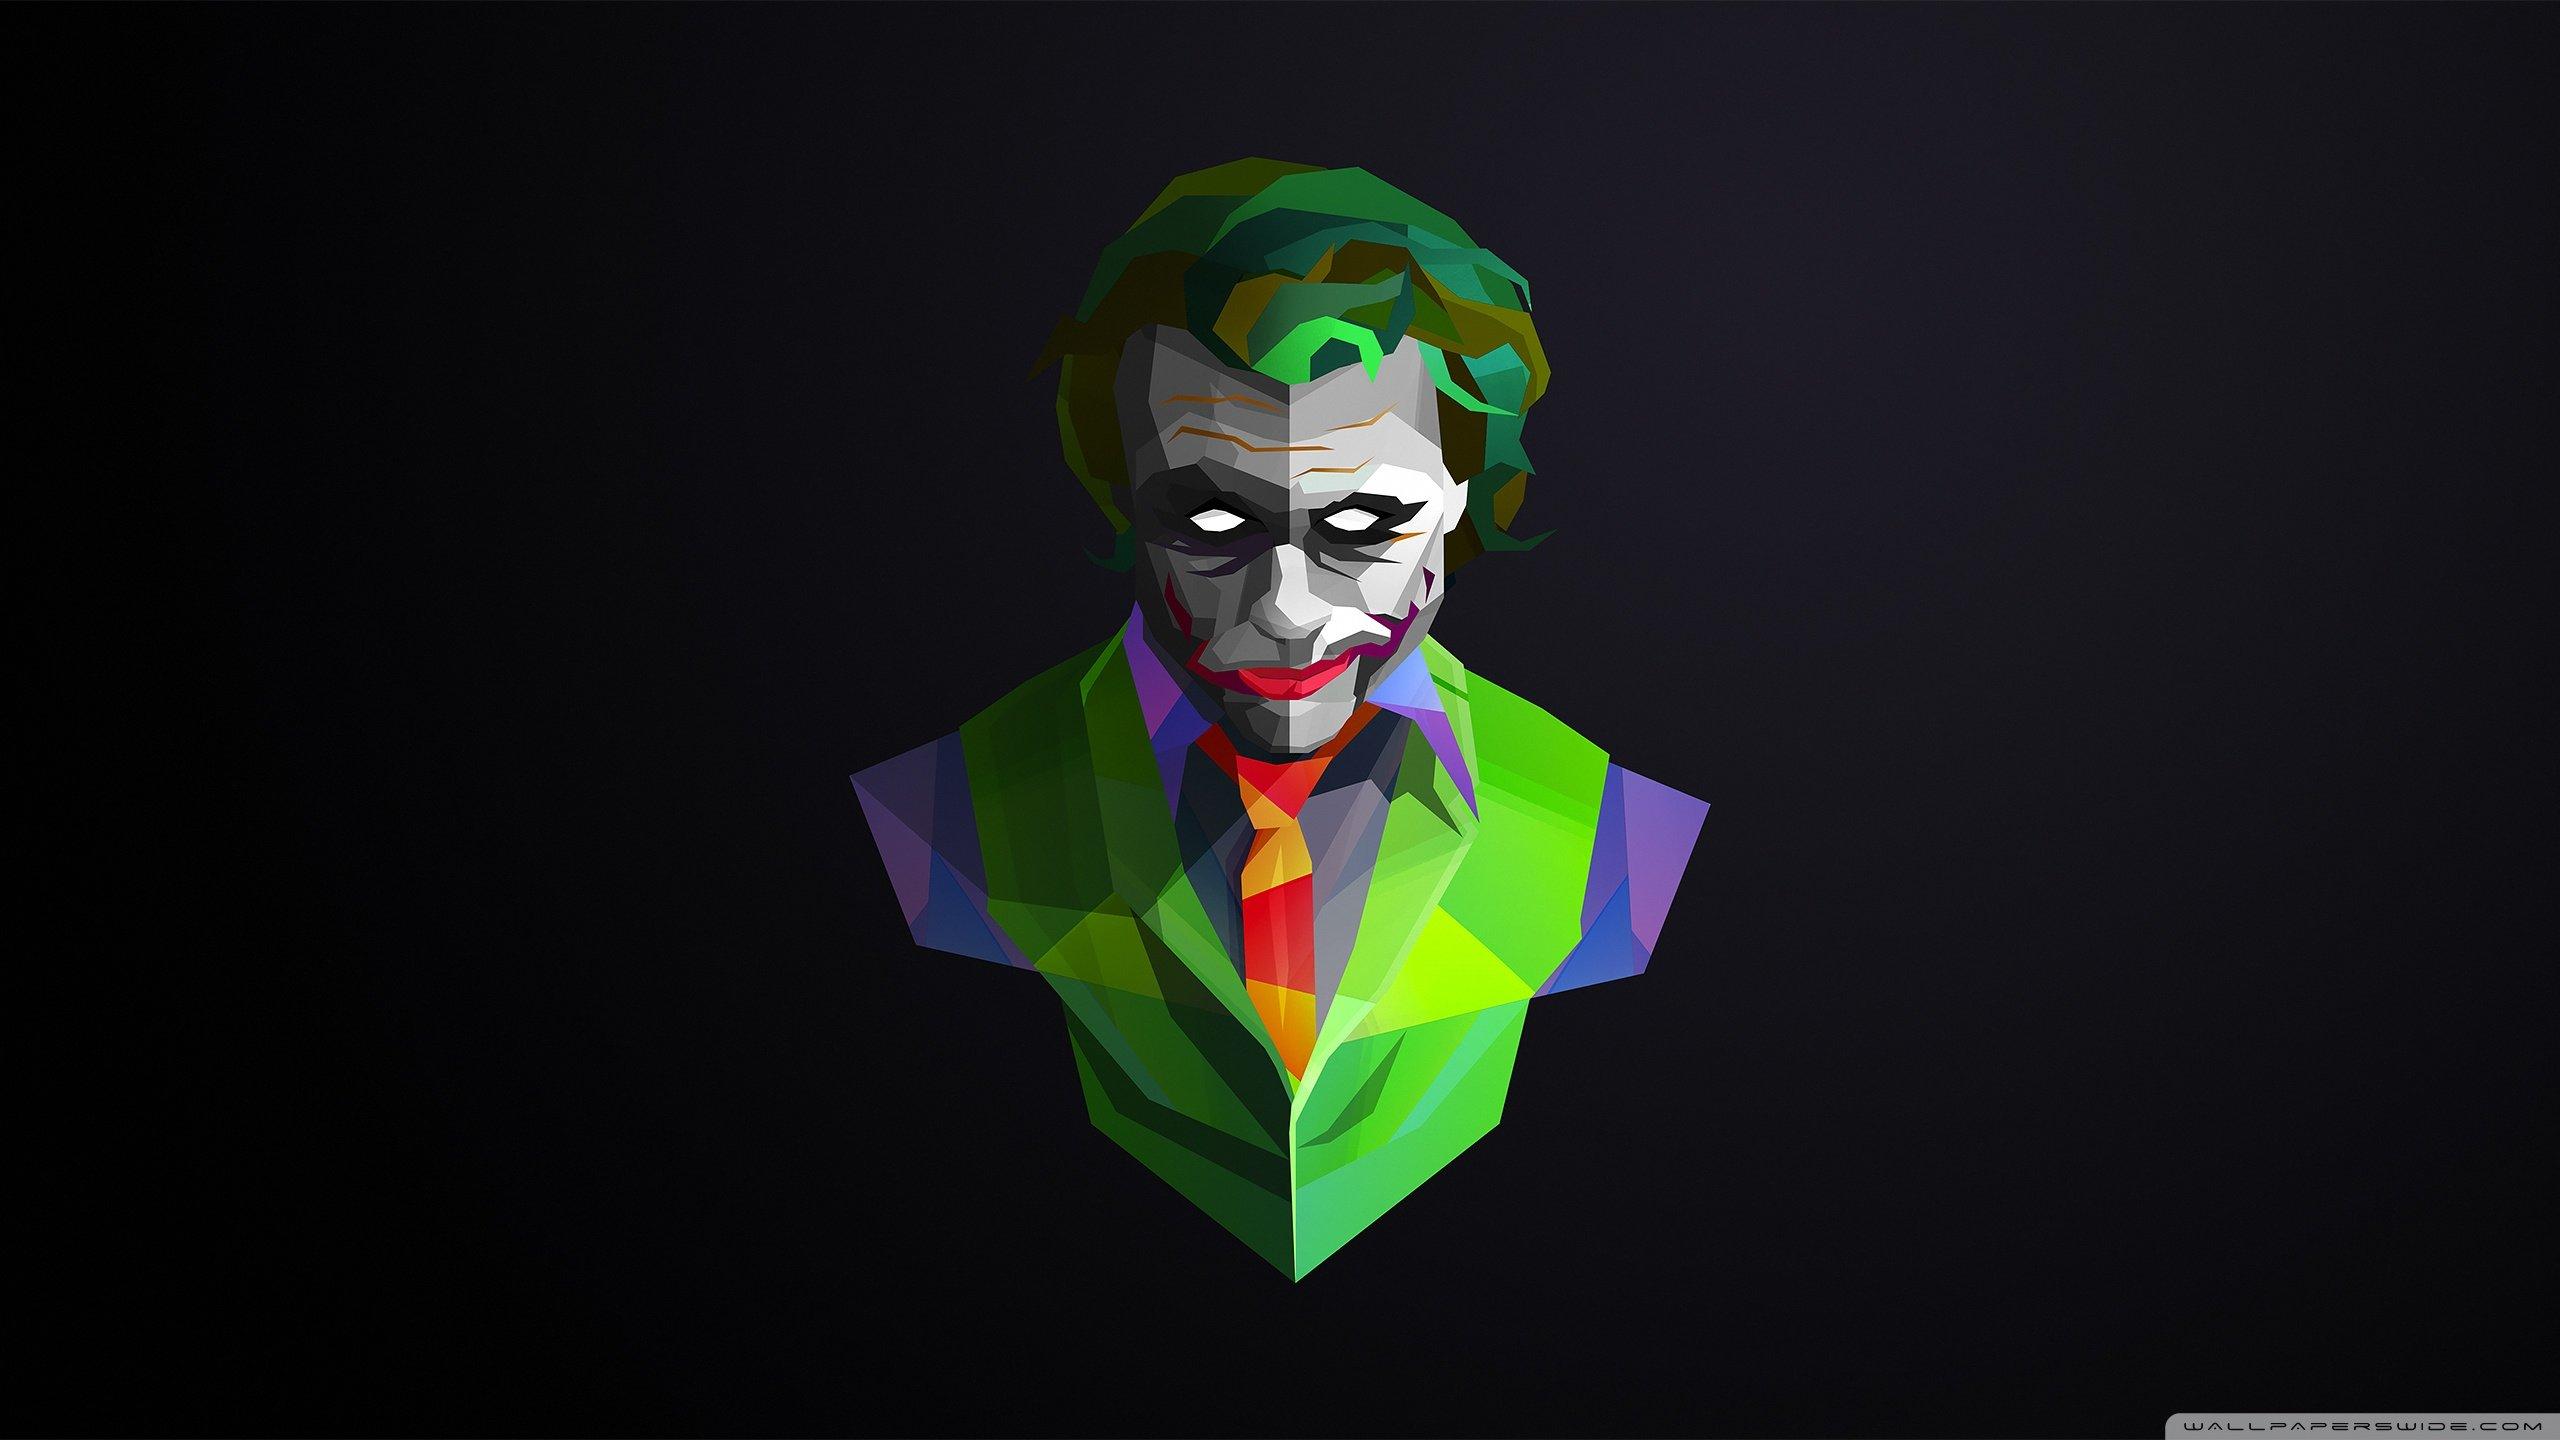 Joker 4K wallpaper for your desktop or mobile screen free